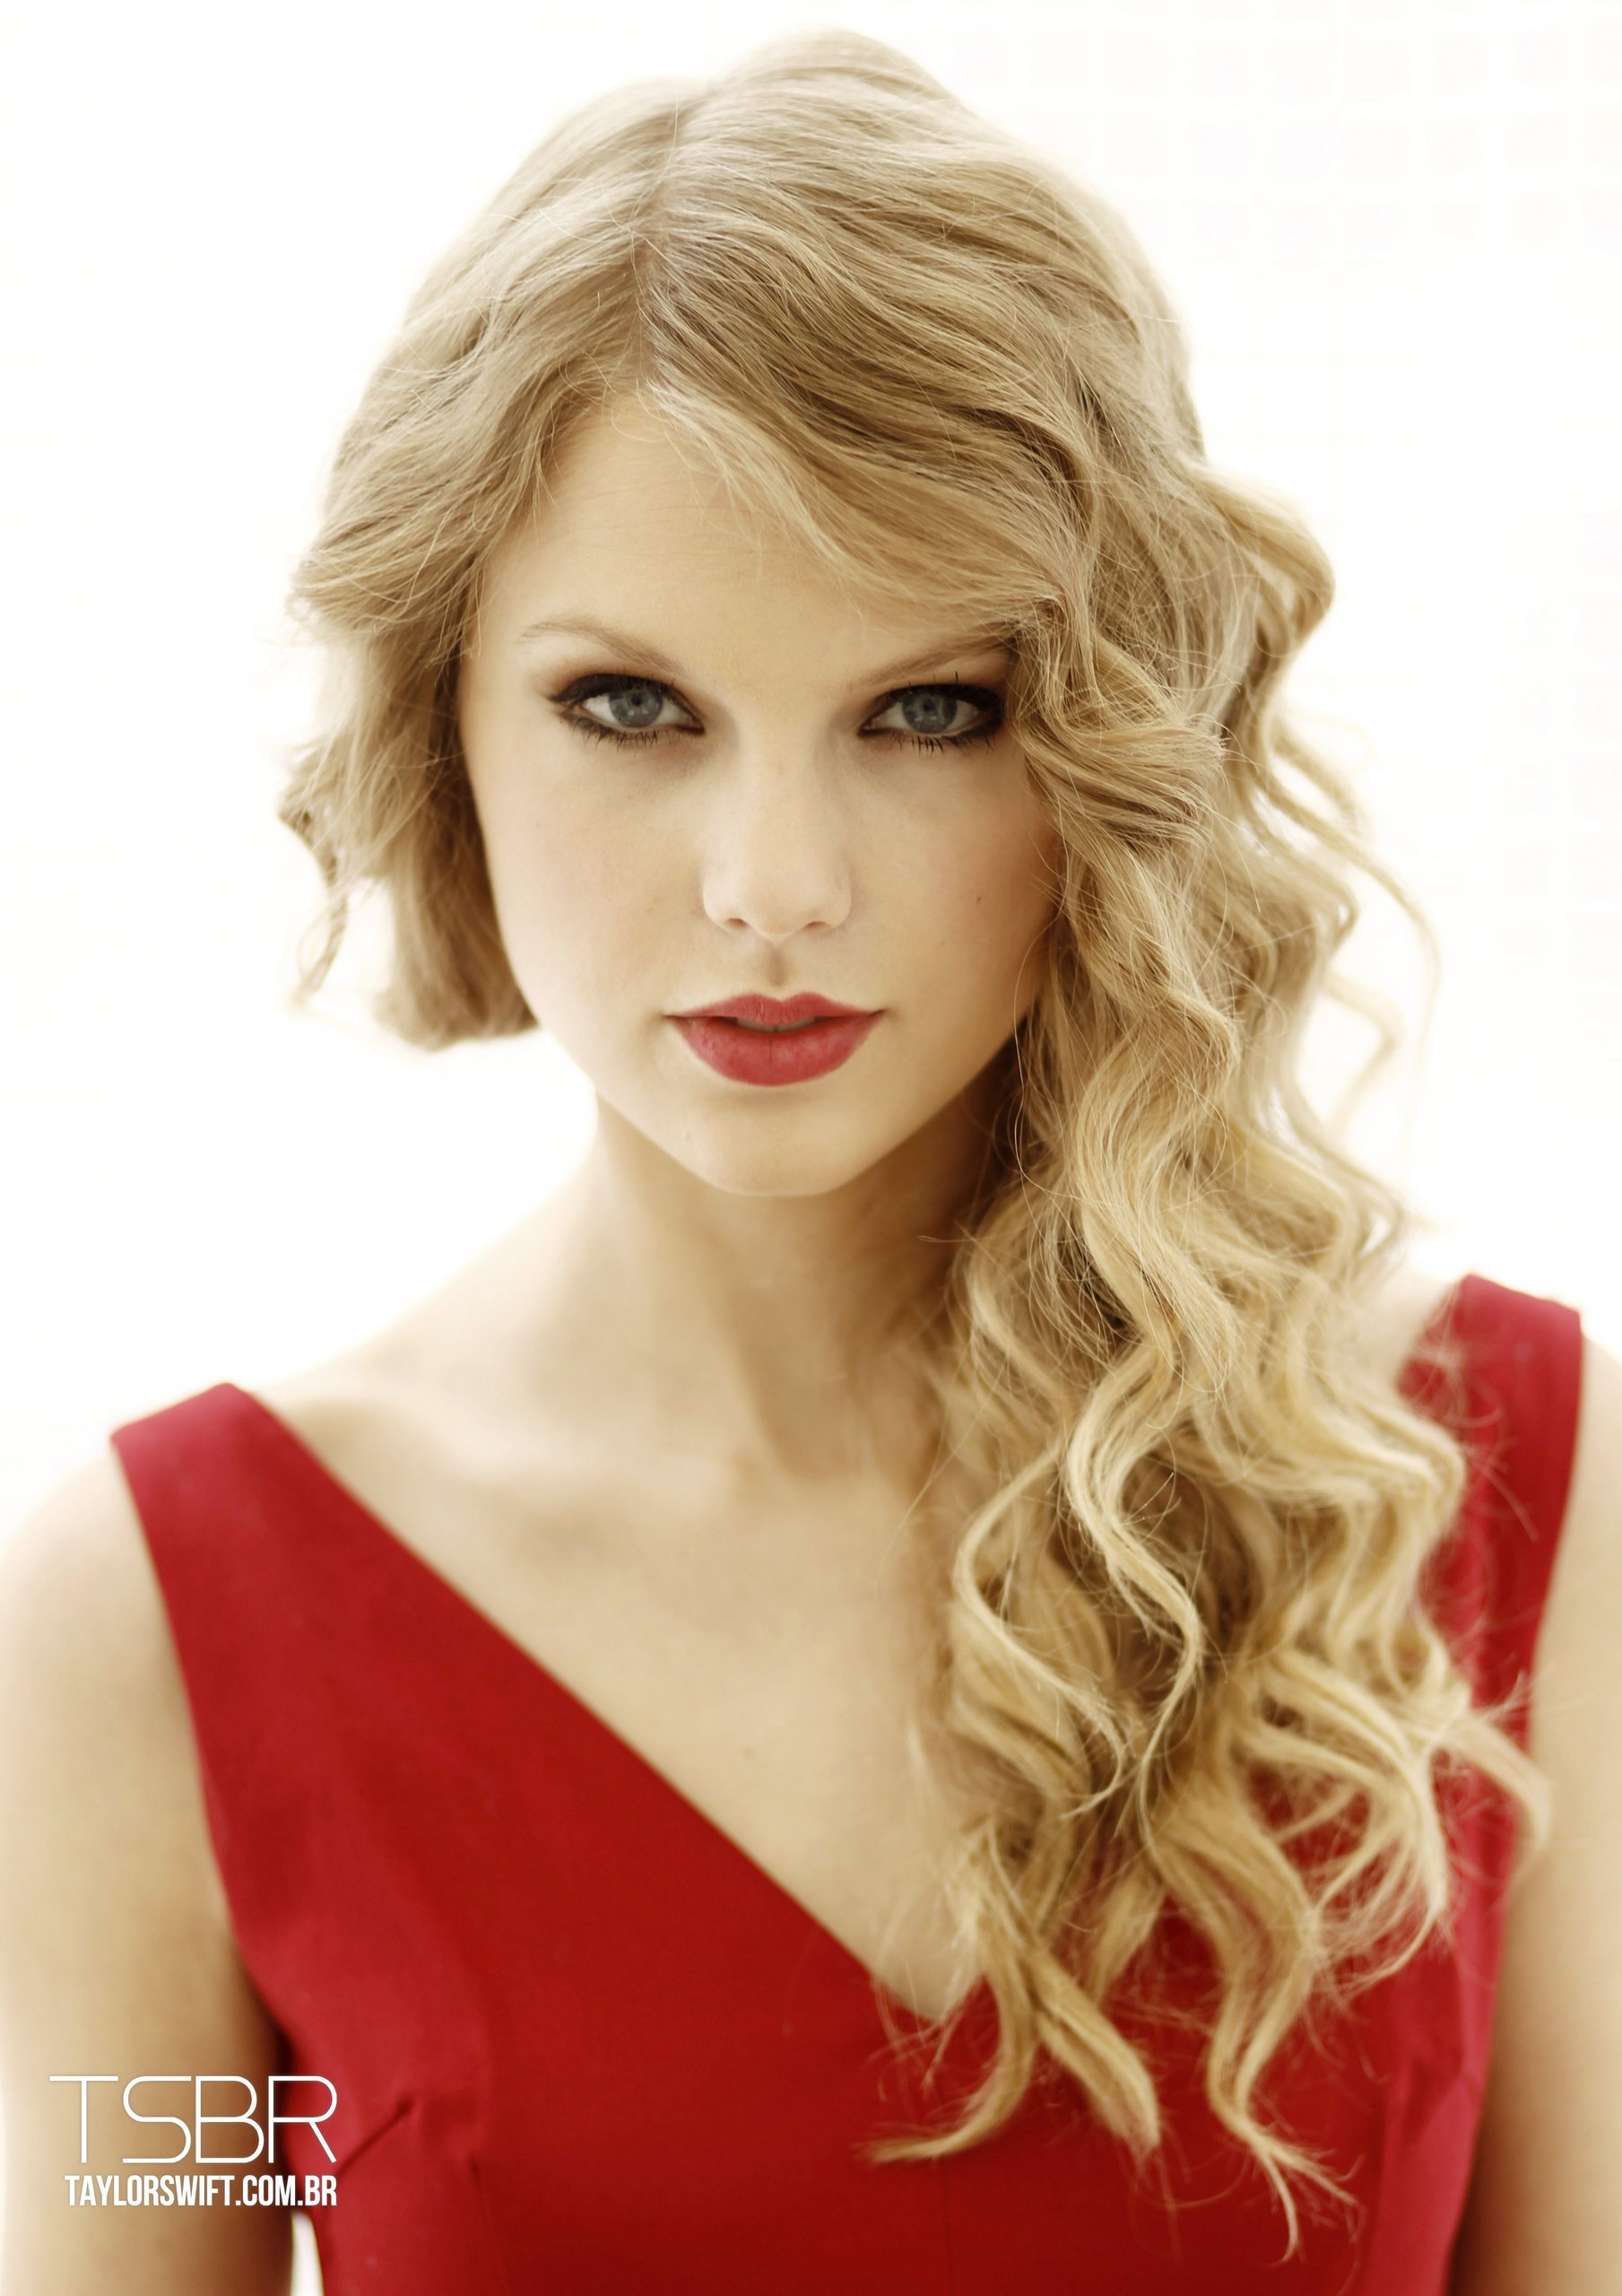 Taylor Swift - Taylor Swift Photo (16433029) - Fanpop